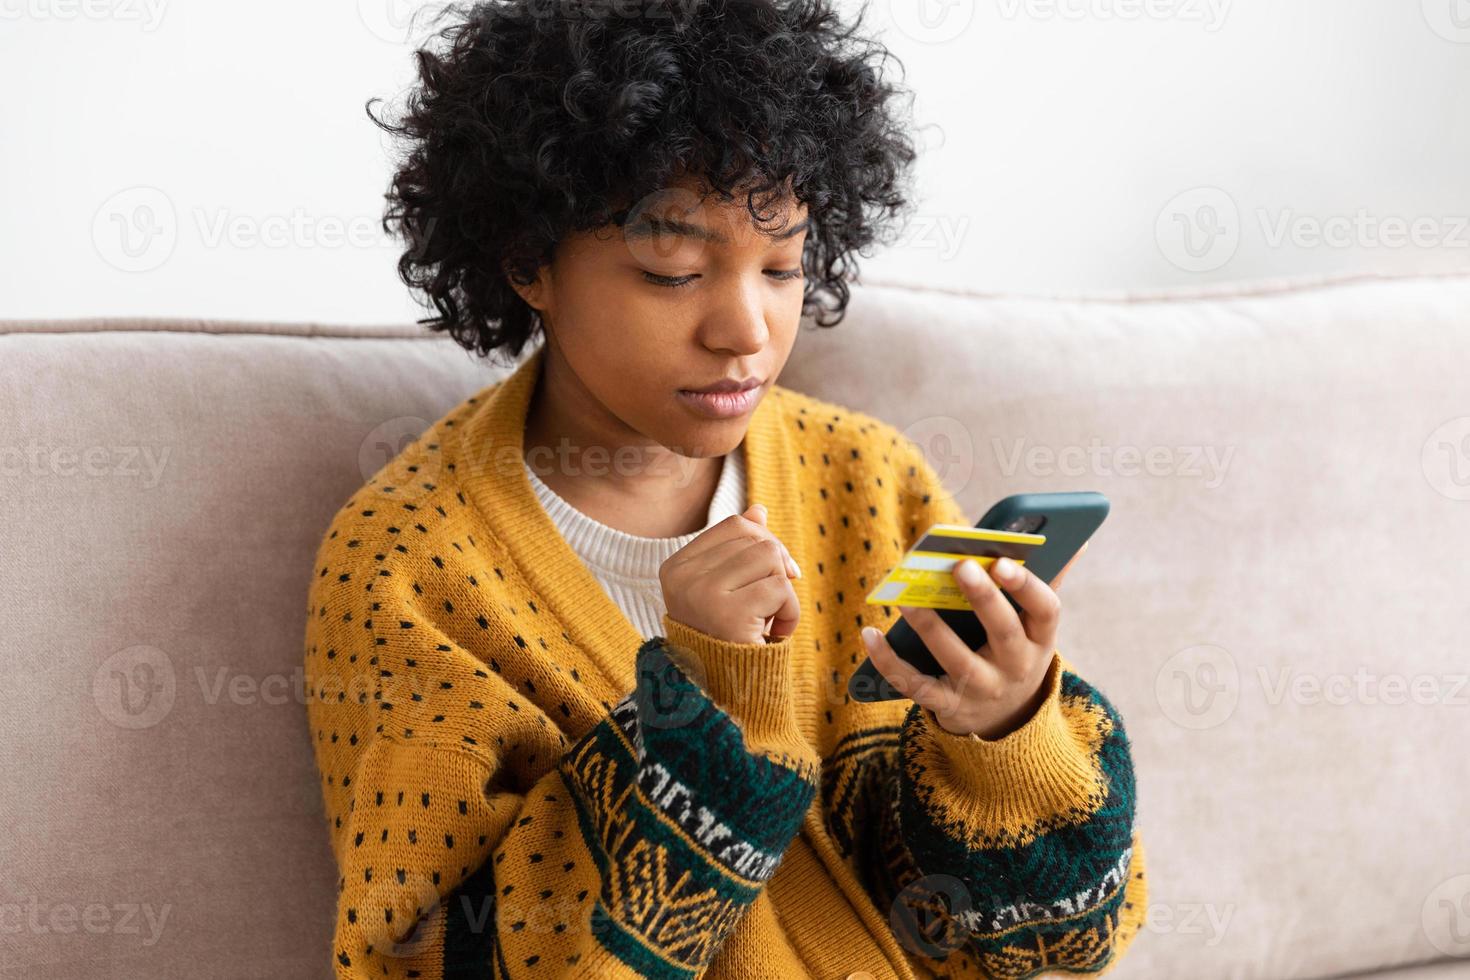 mujer afroamericana comprando en línea con un teléfono inteligente pagando con tarjeta de crédito dorada. niña sentada en casa comprando en internet ingrese los detalles de la tarjeta de crédito. servicio de entrega de comercio electrónico de compras en línea. foto